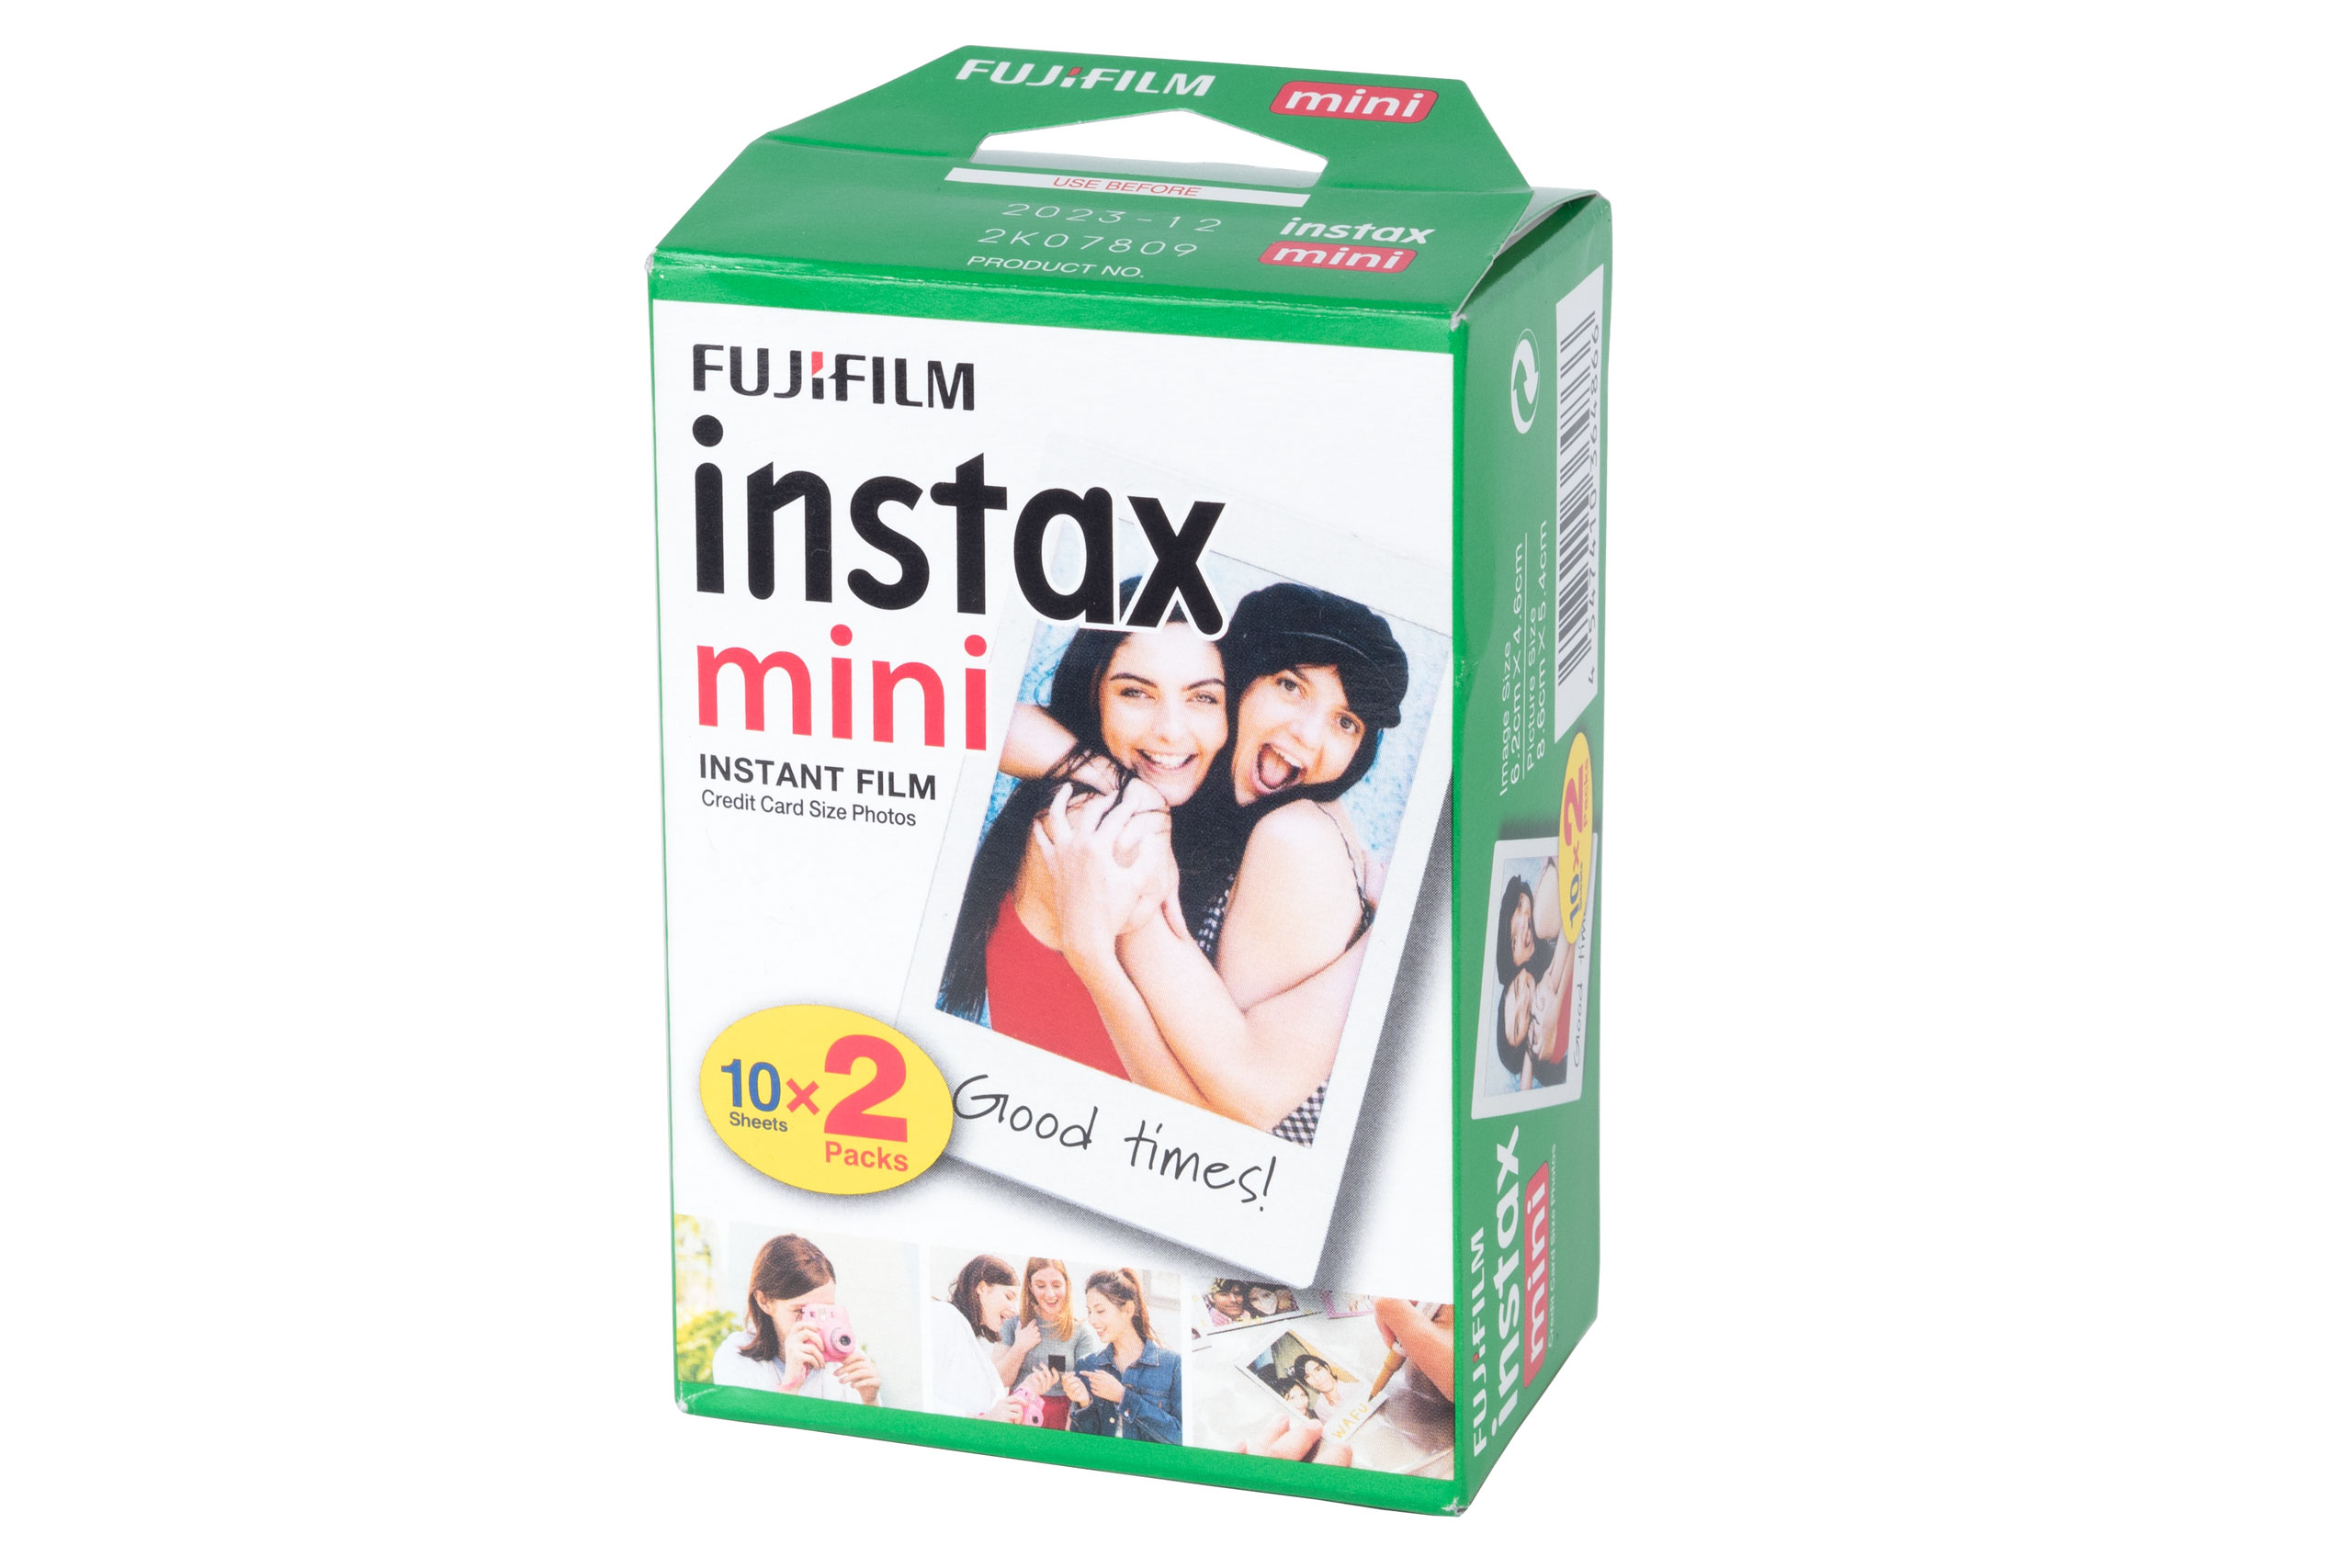 Fujifilm Instax Mini film pack